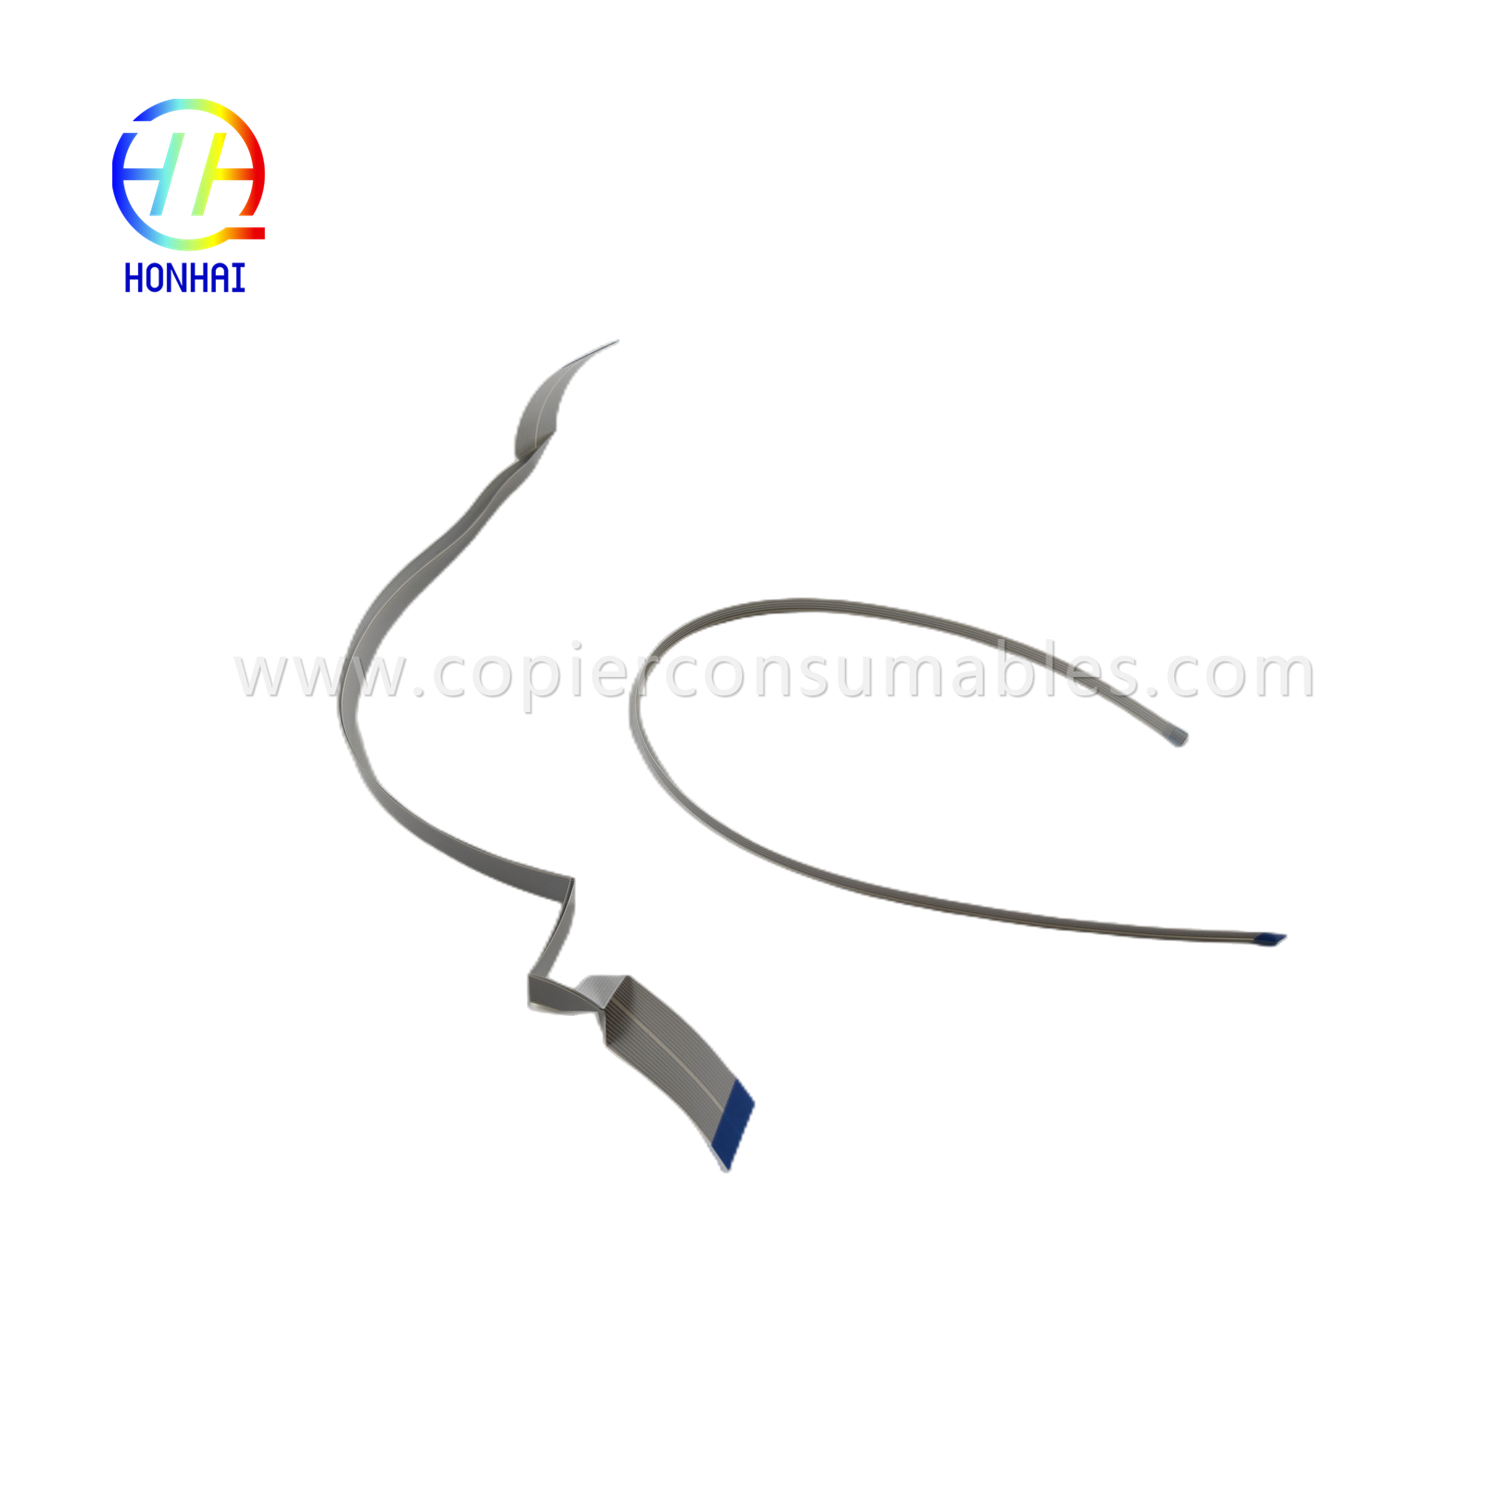 https://www.copierconsumables.com/flex-cable-for-epson-l1110-l3110-l3210-l3150-l3250-l5190-l5290-head-cable-product/